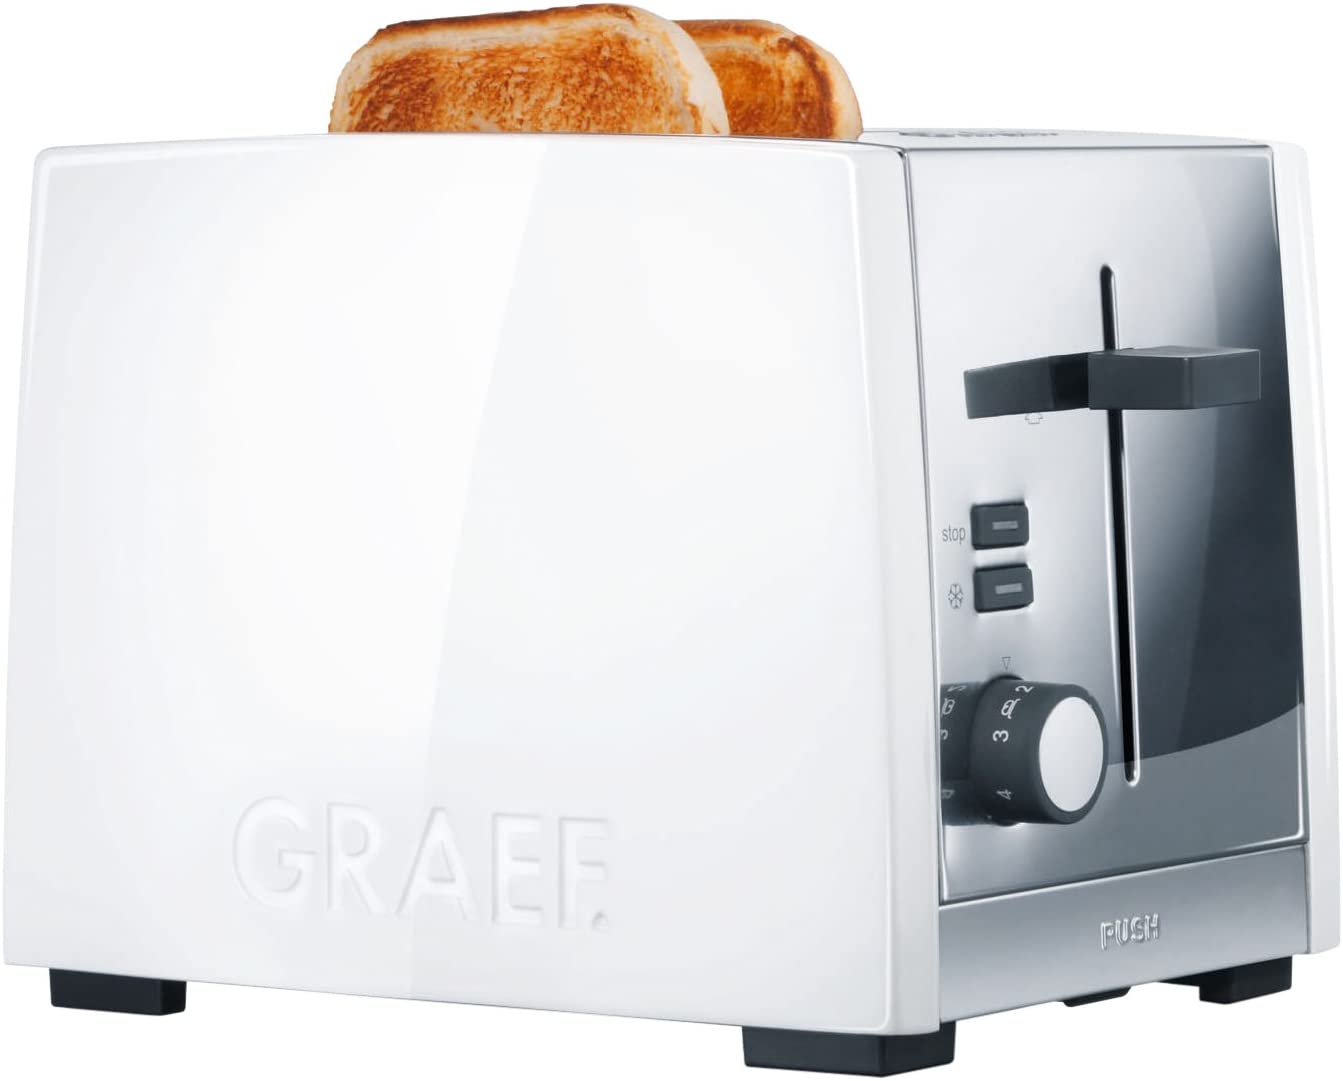 Graef Acrylic 2 Slot Toaster, White